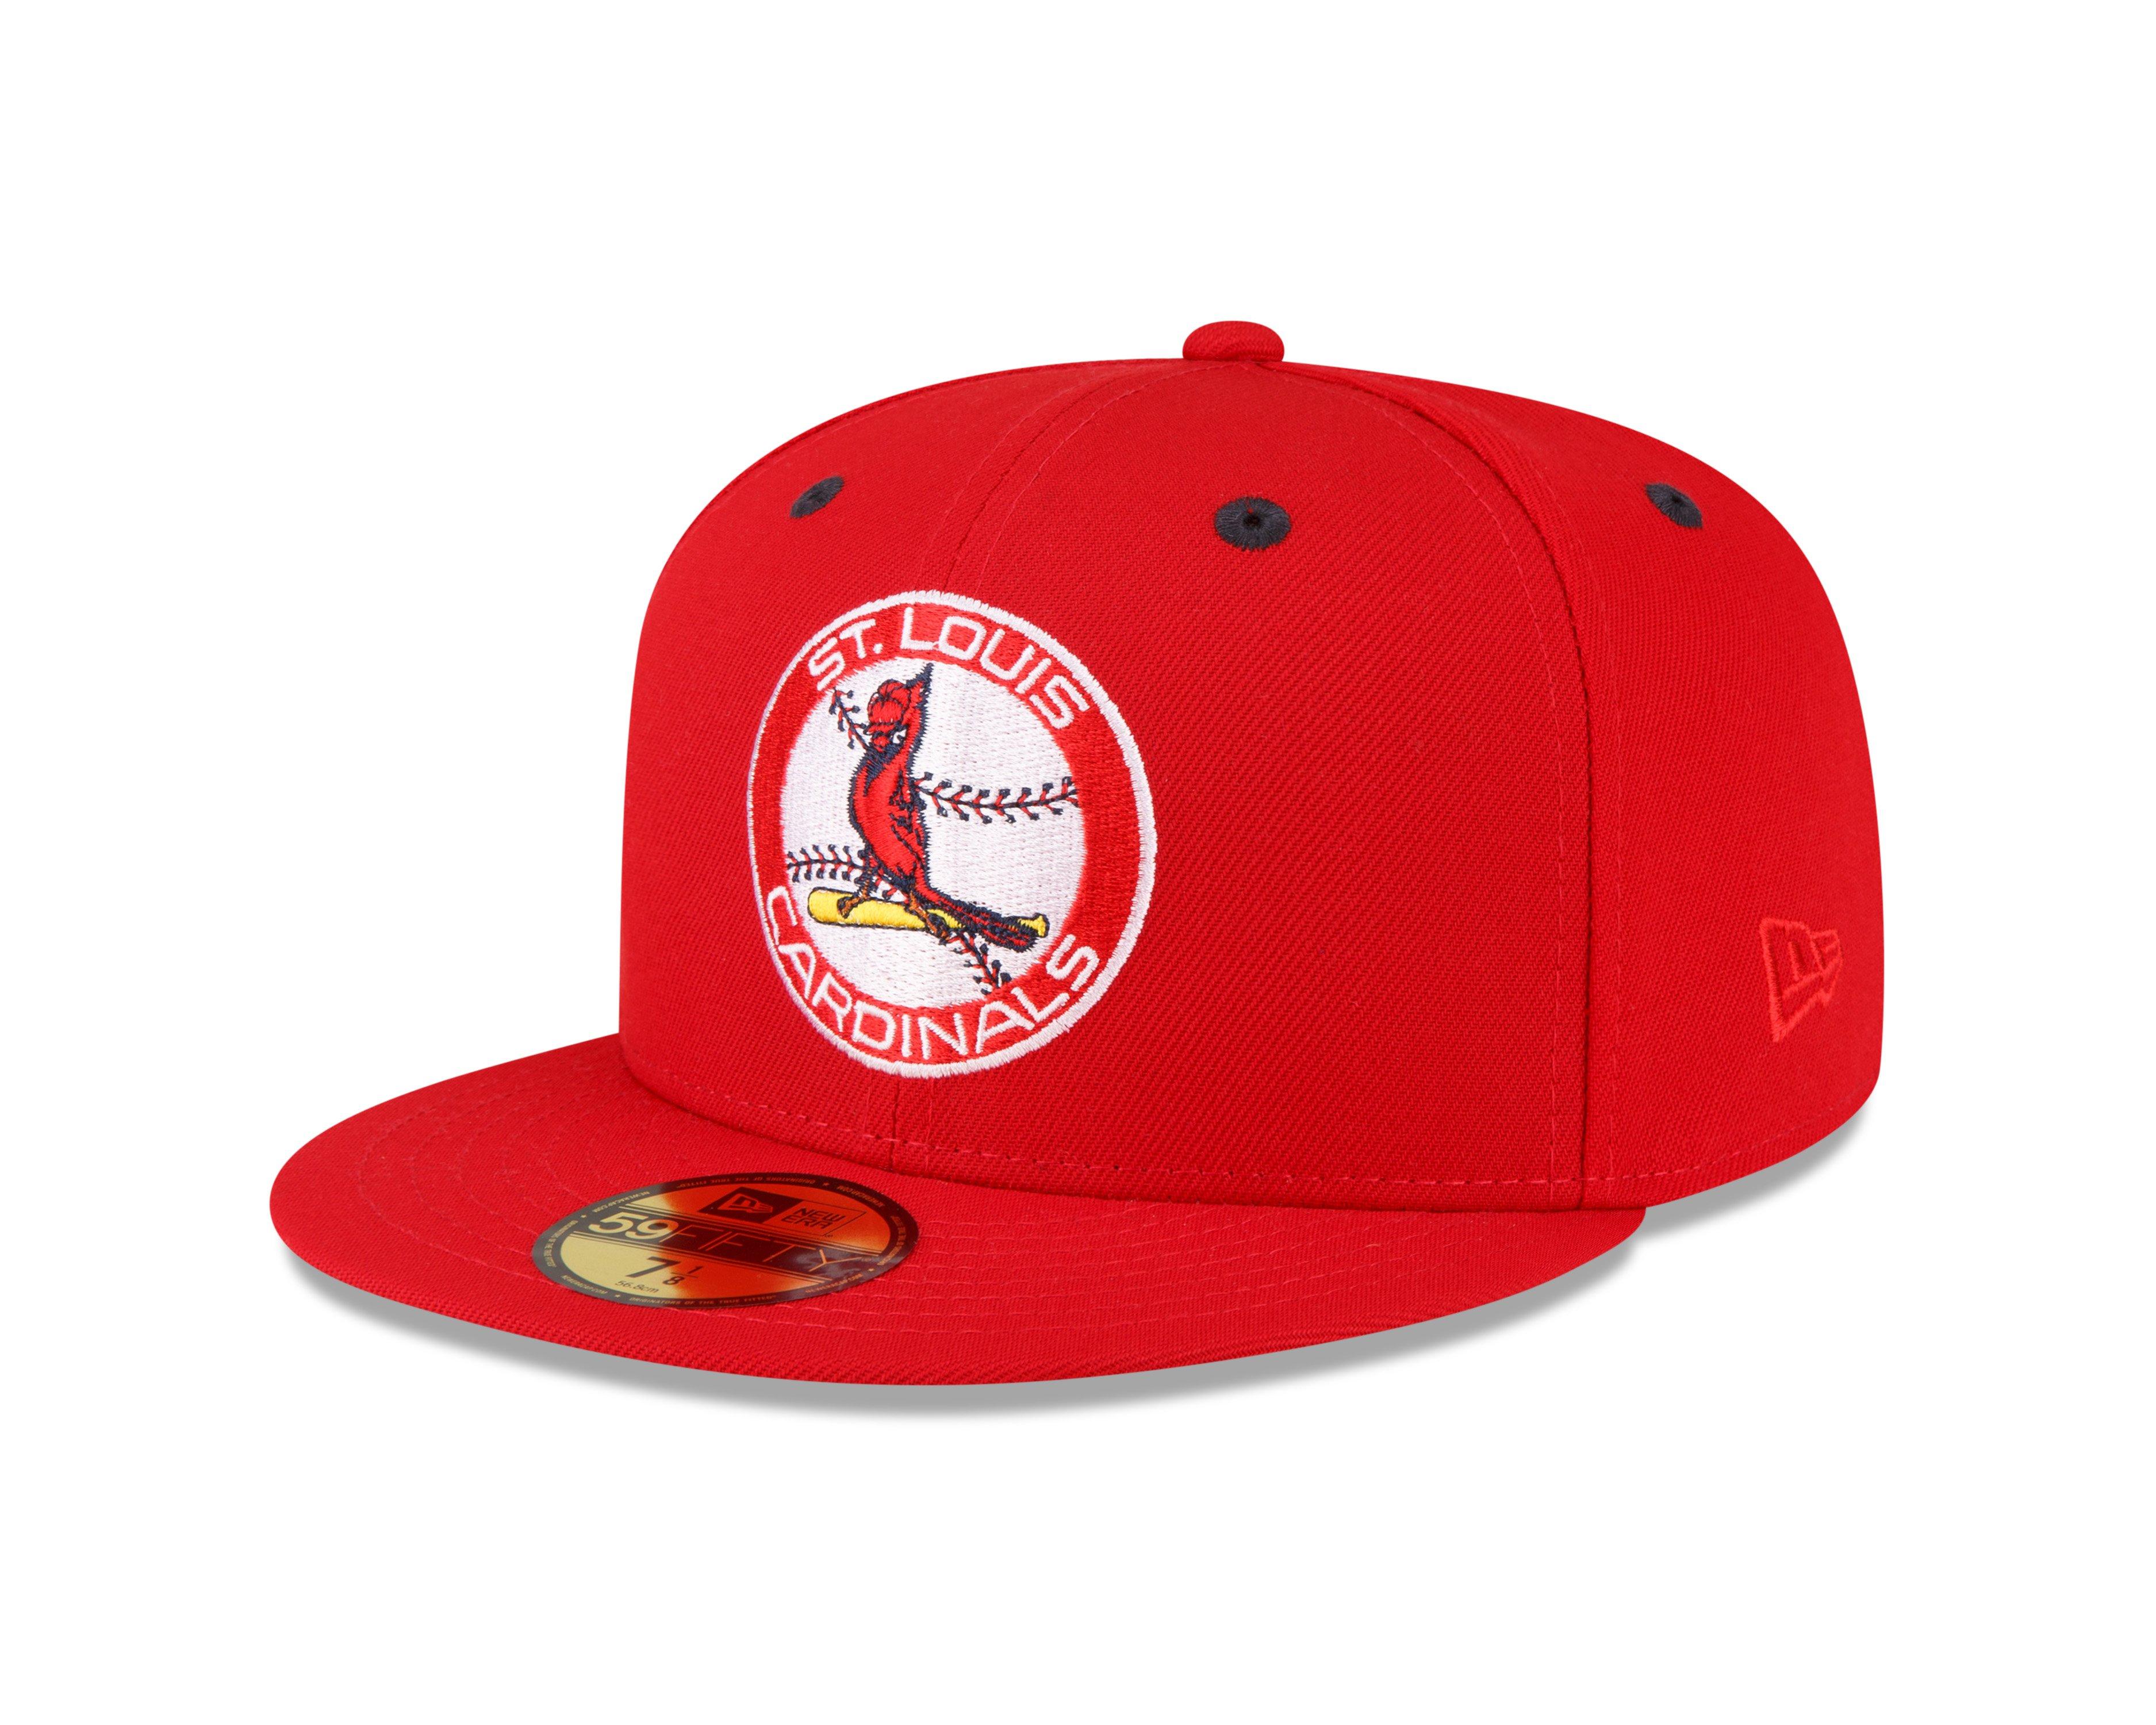 St. Louis Cardinals Hat Mouse Pad